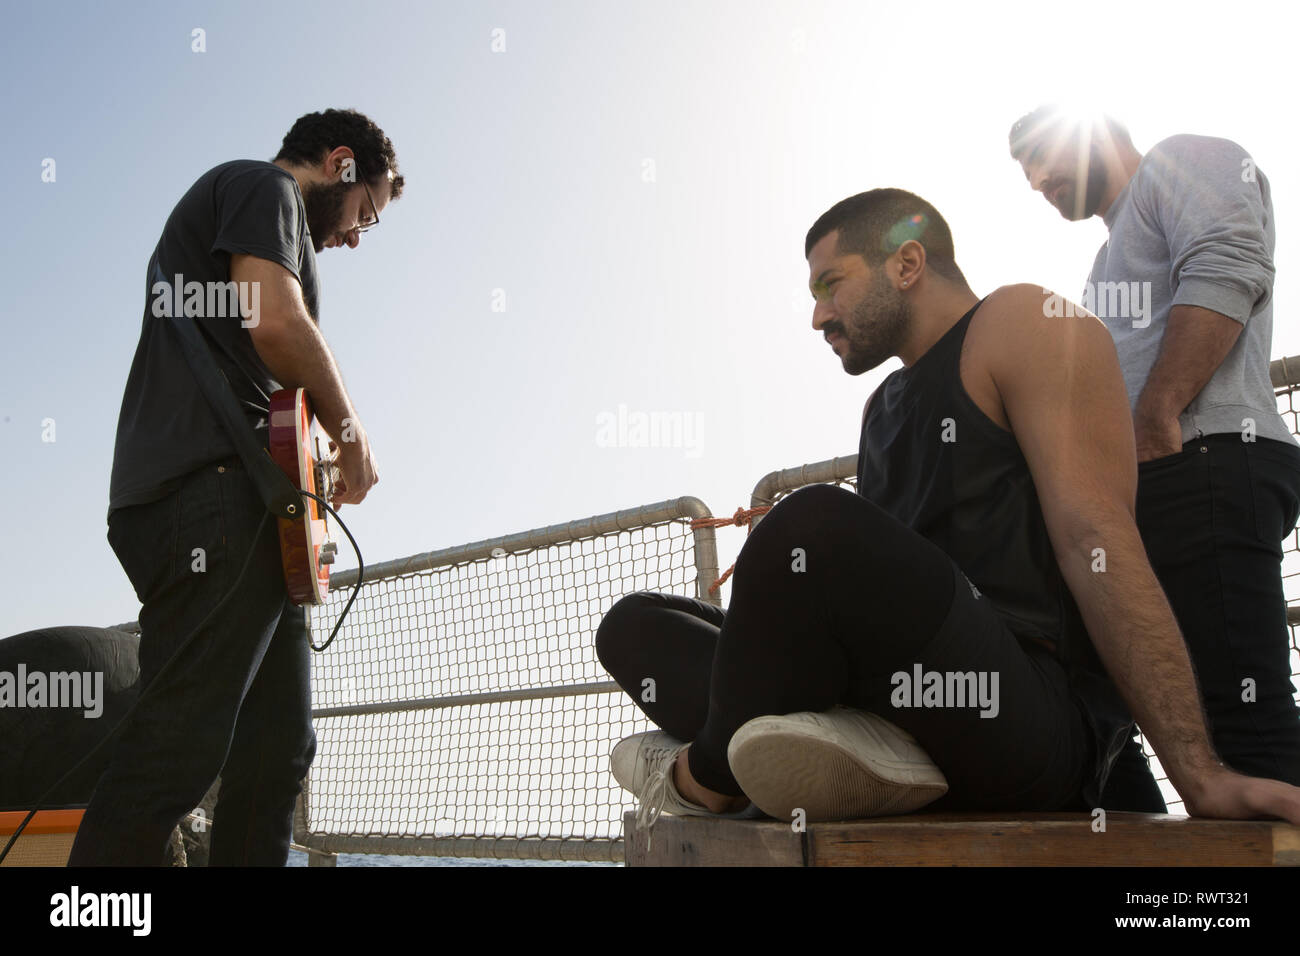 Banda libanesa Mashrou' Leila configurar y preparar para grabar una canción a bordo del barco de Greenpeace Rainbow Warrior en el sol nos une tour, el Mar Mediterráneo, el 23 de octubre de 2016. N38°01.500' E9°45.172' Foto de stock